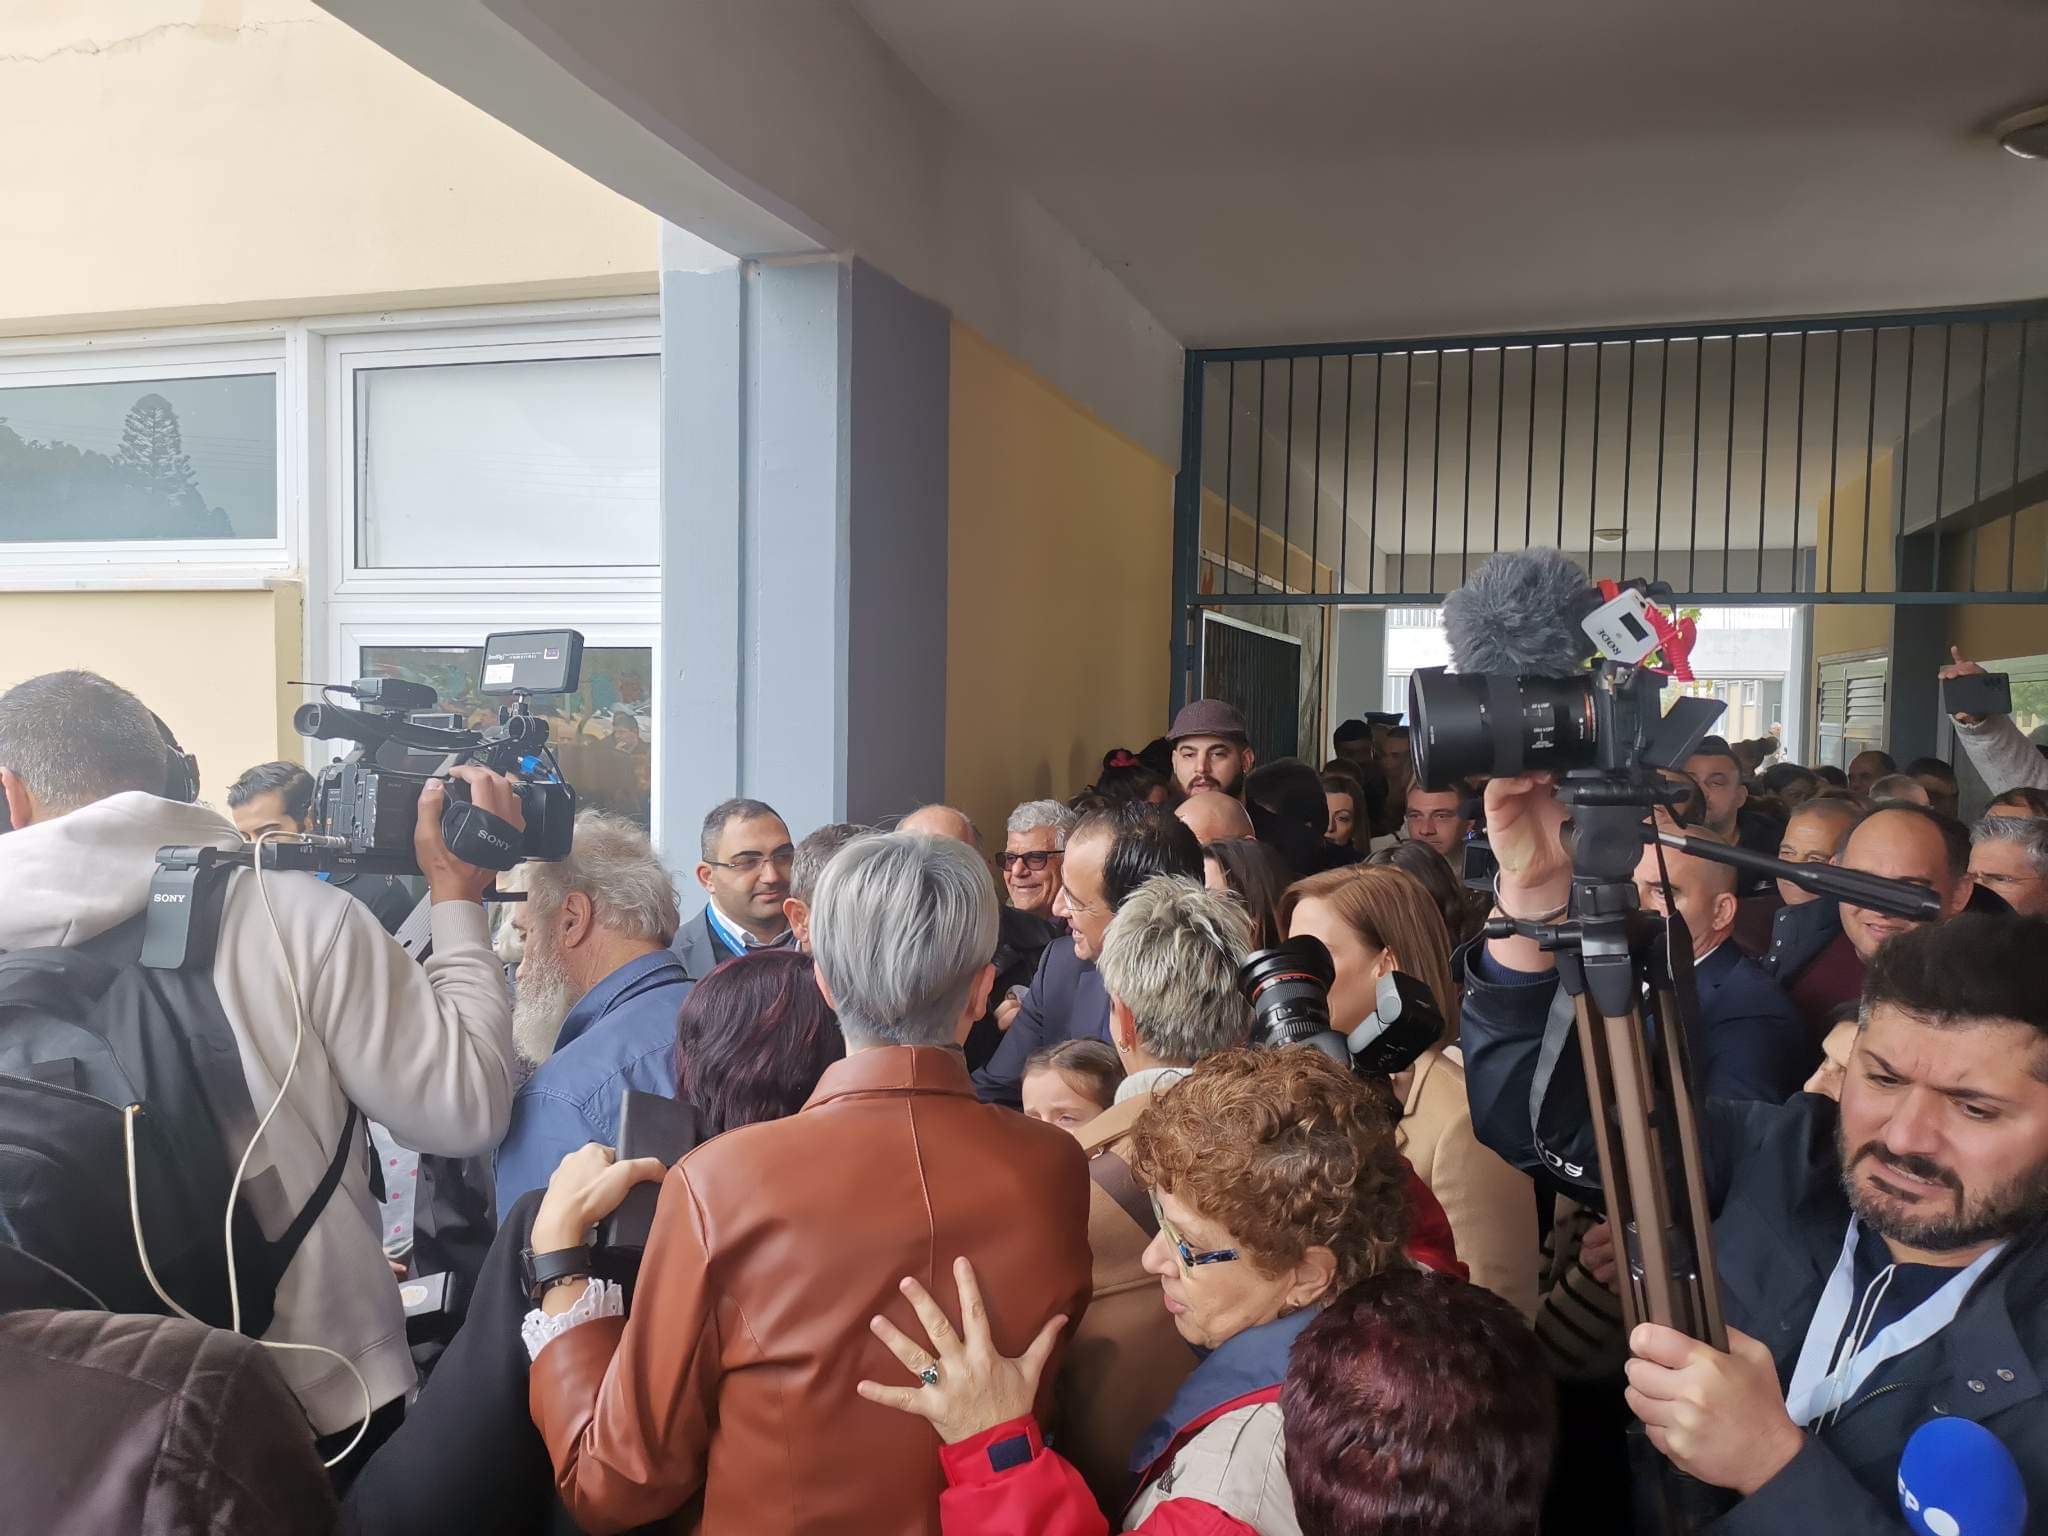 ΓΕΡΟΣΚΗΠΟΥ: Άσκησε το εκλογικό του δικαίωμα ο Νίκος Χριστοδουλίδης (ΦΩΤΟ)